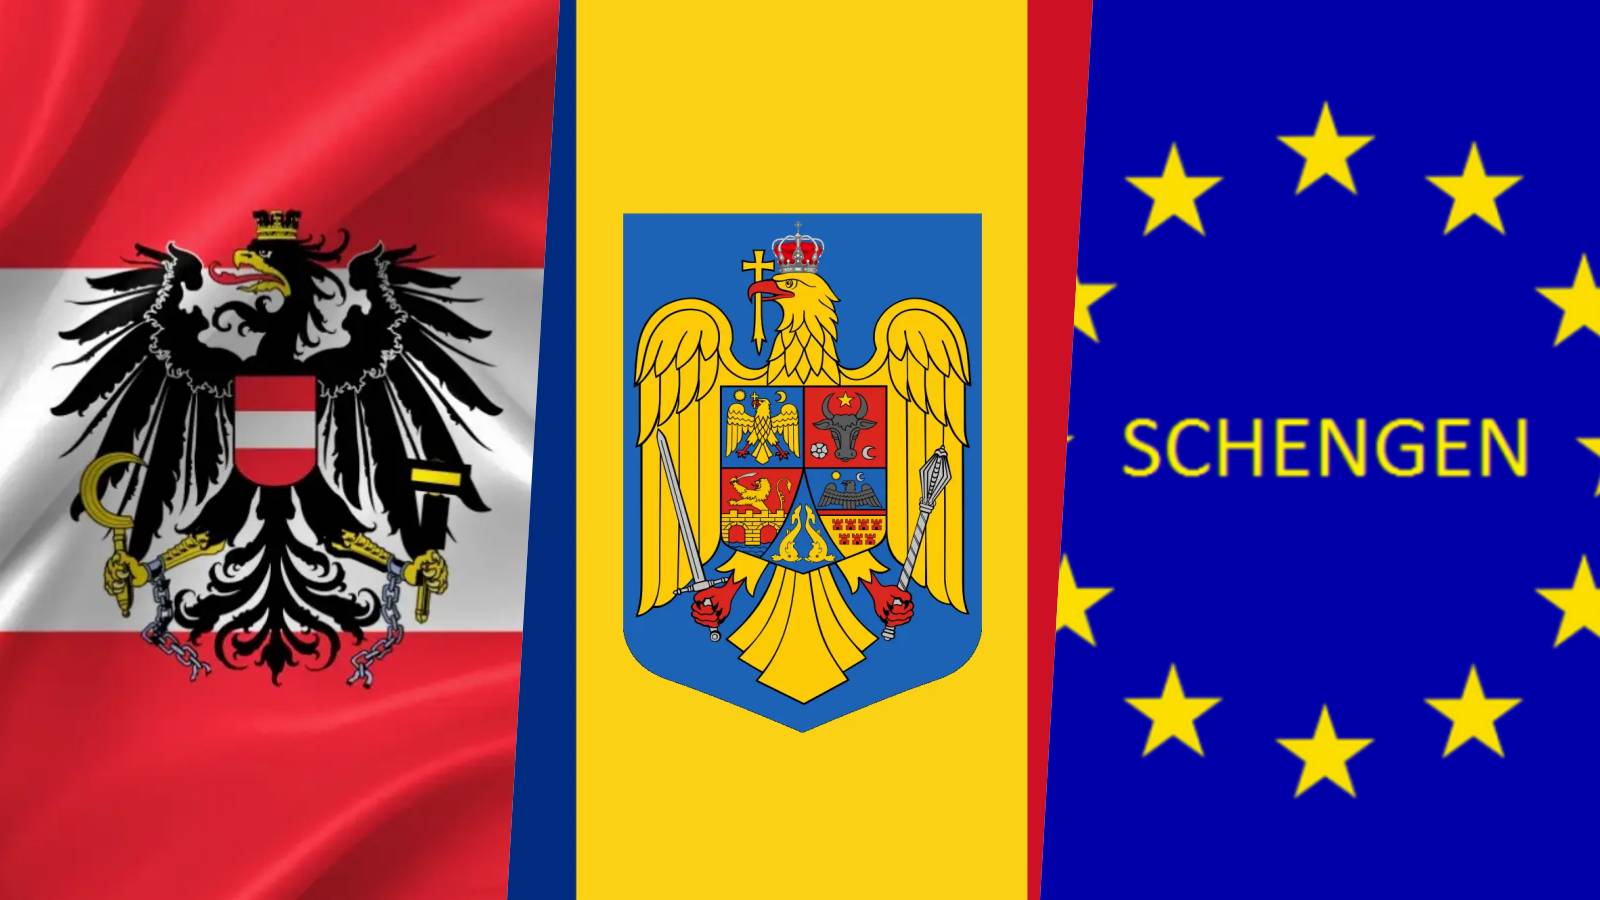 Österreich Karl Nehammer wurde beim Lügen erwischt und blockierte den Schengen-Beitritt Rumäniens